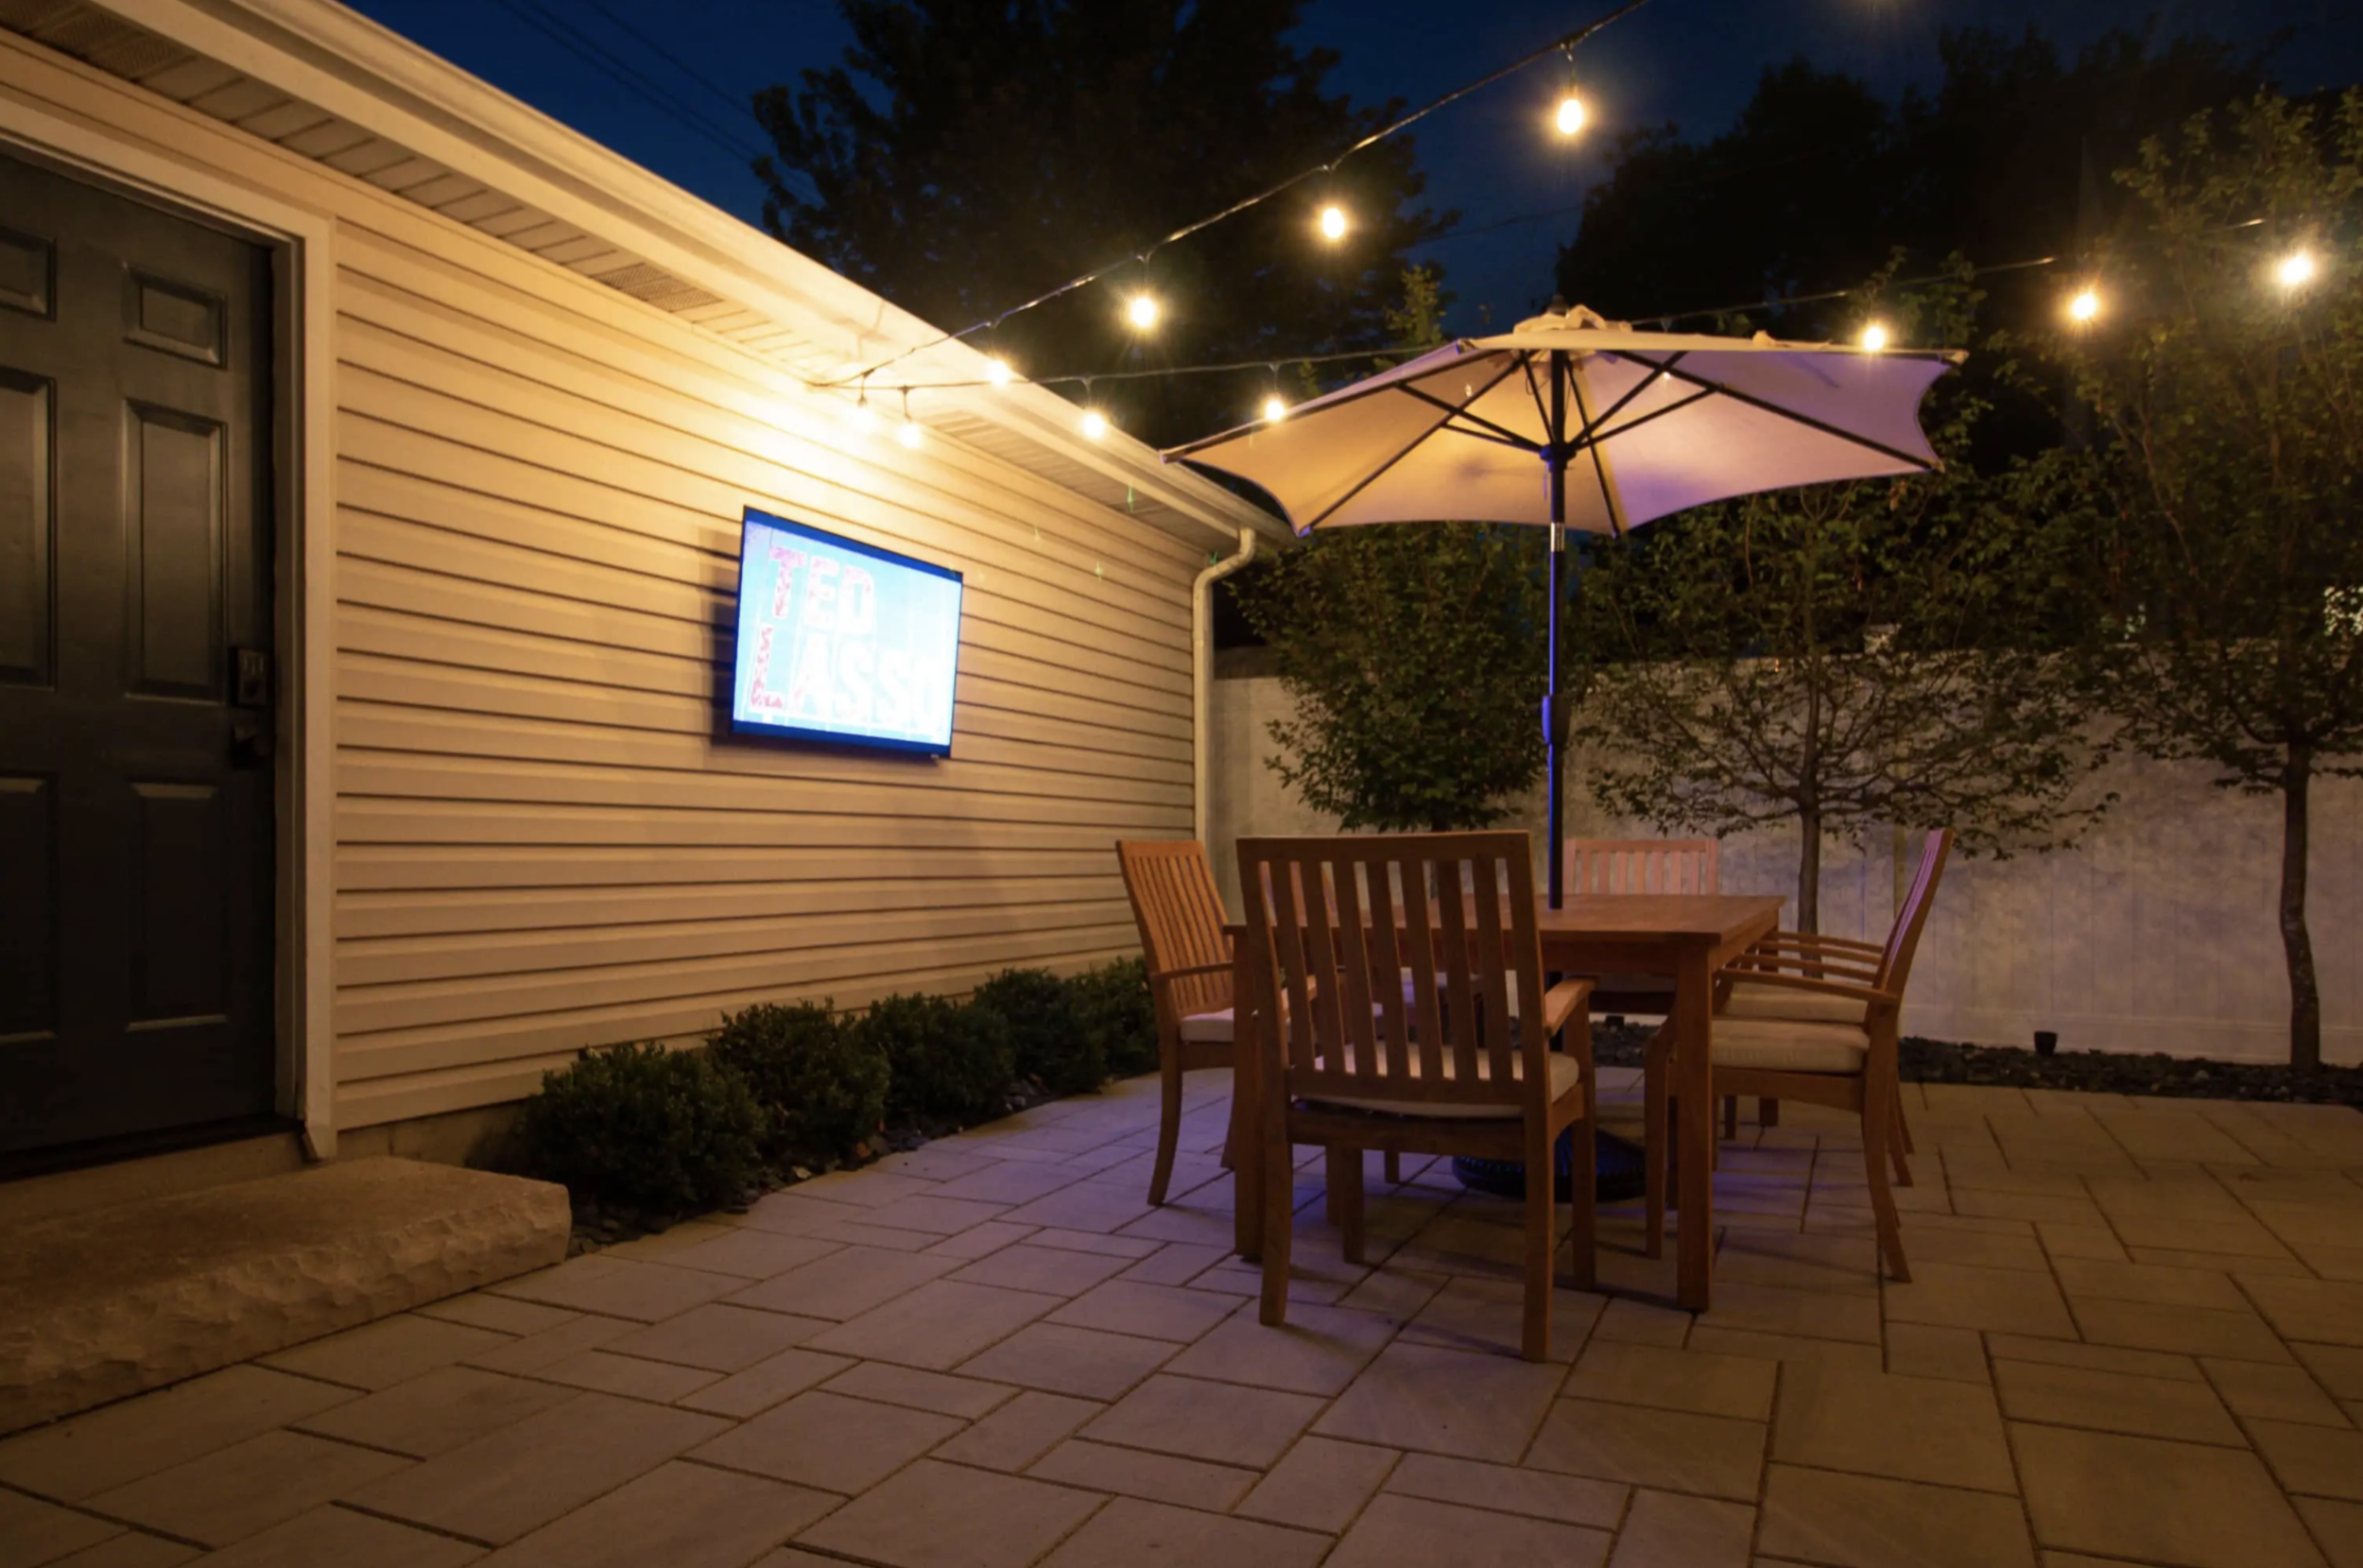 Outdoor dining room and TV room for DIY Playbook in her Yardzen yard!